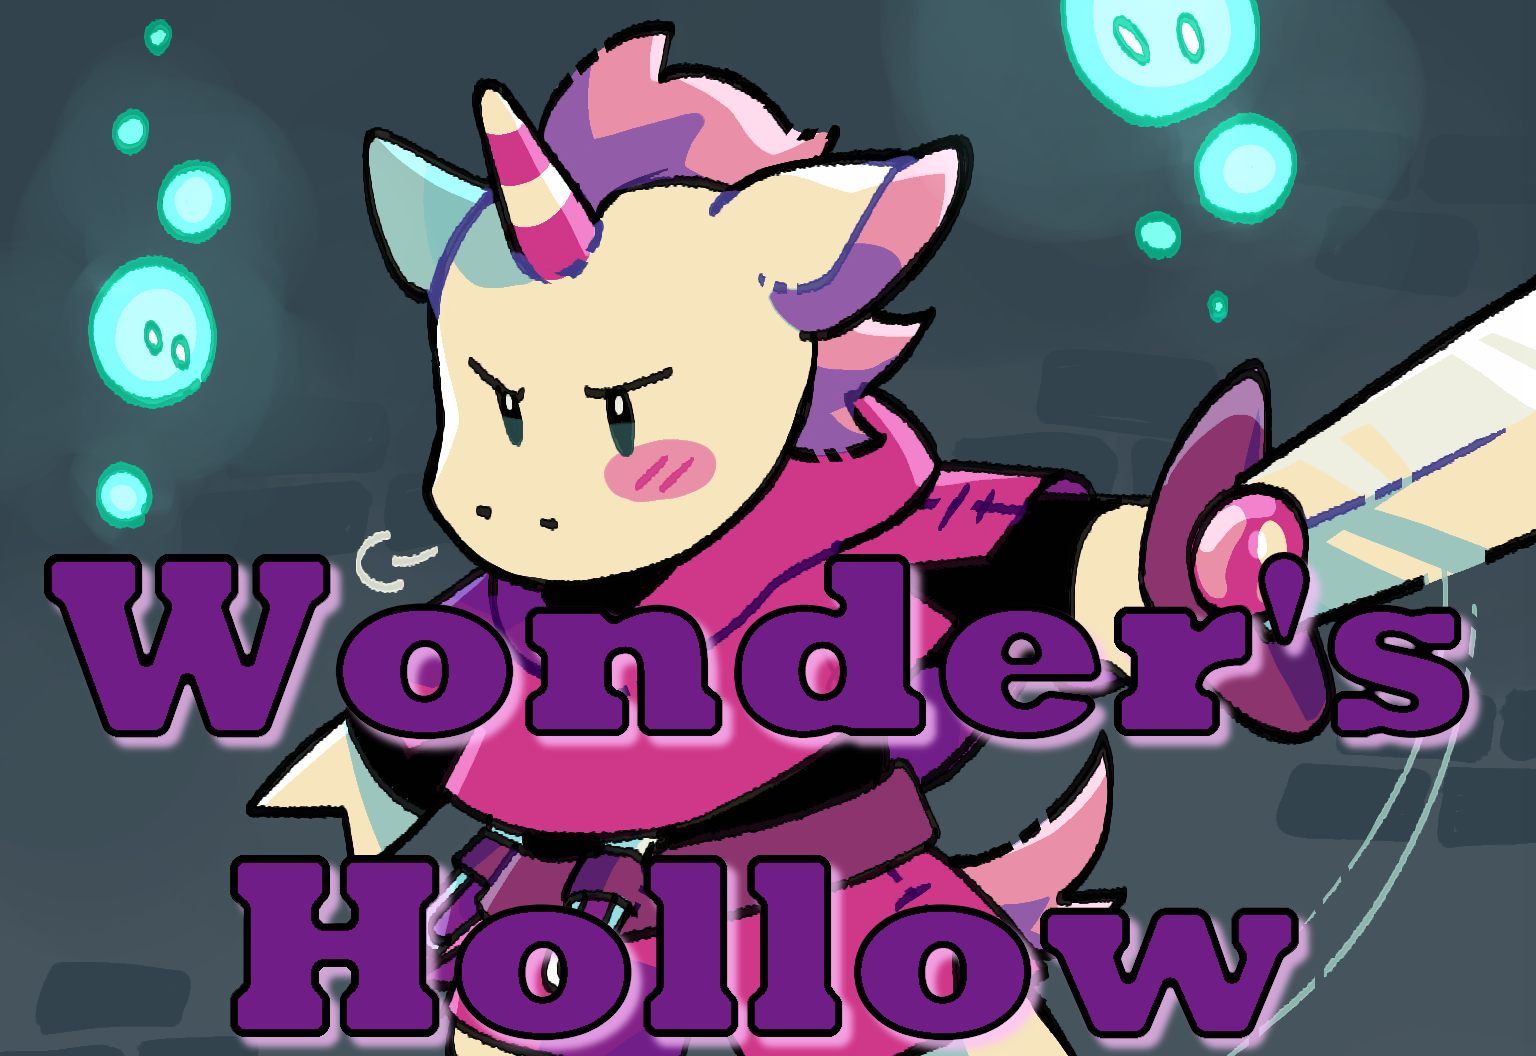 Wonder's Hollow